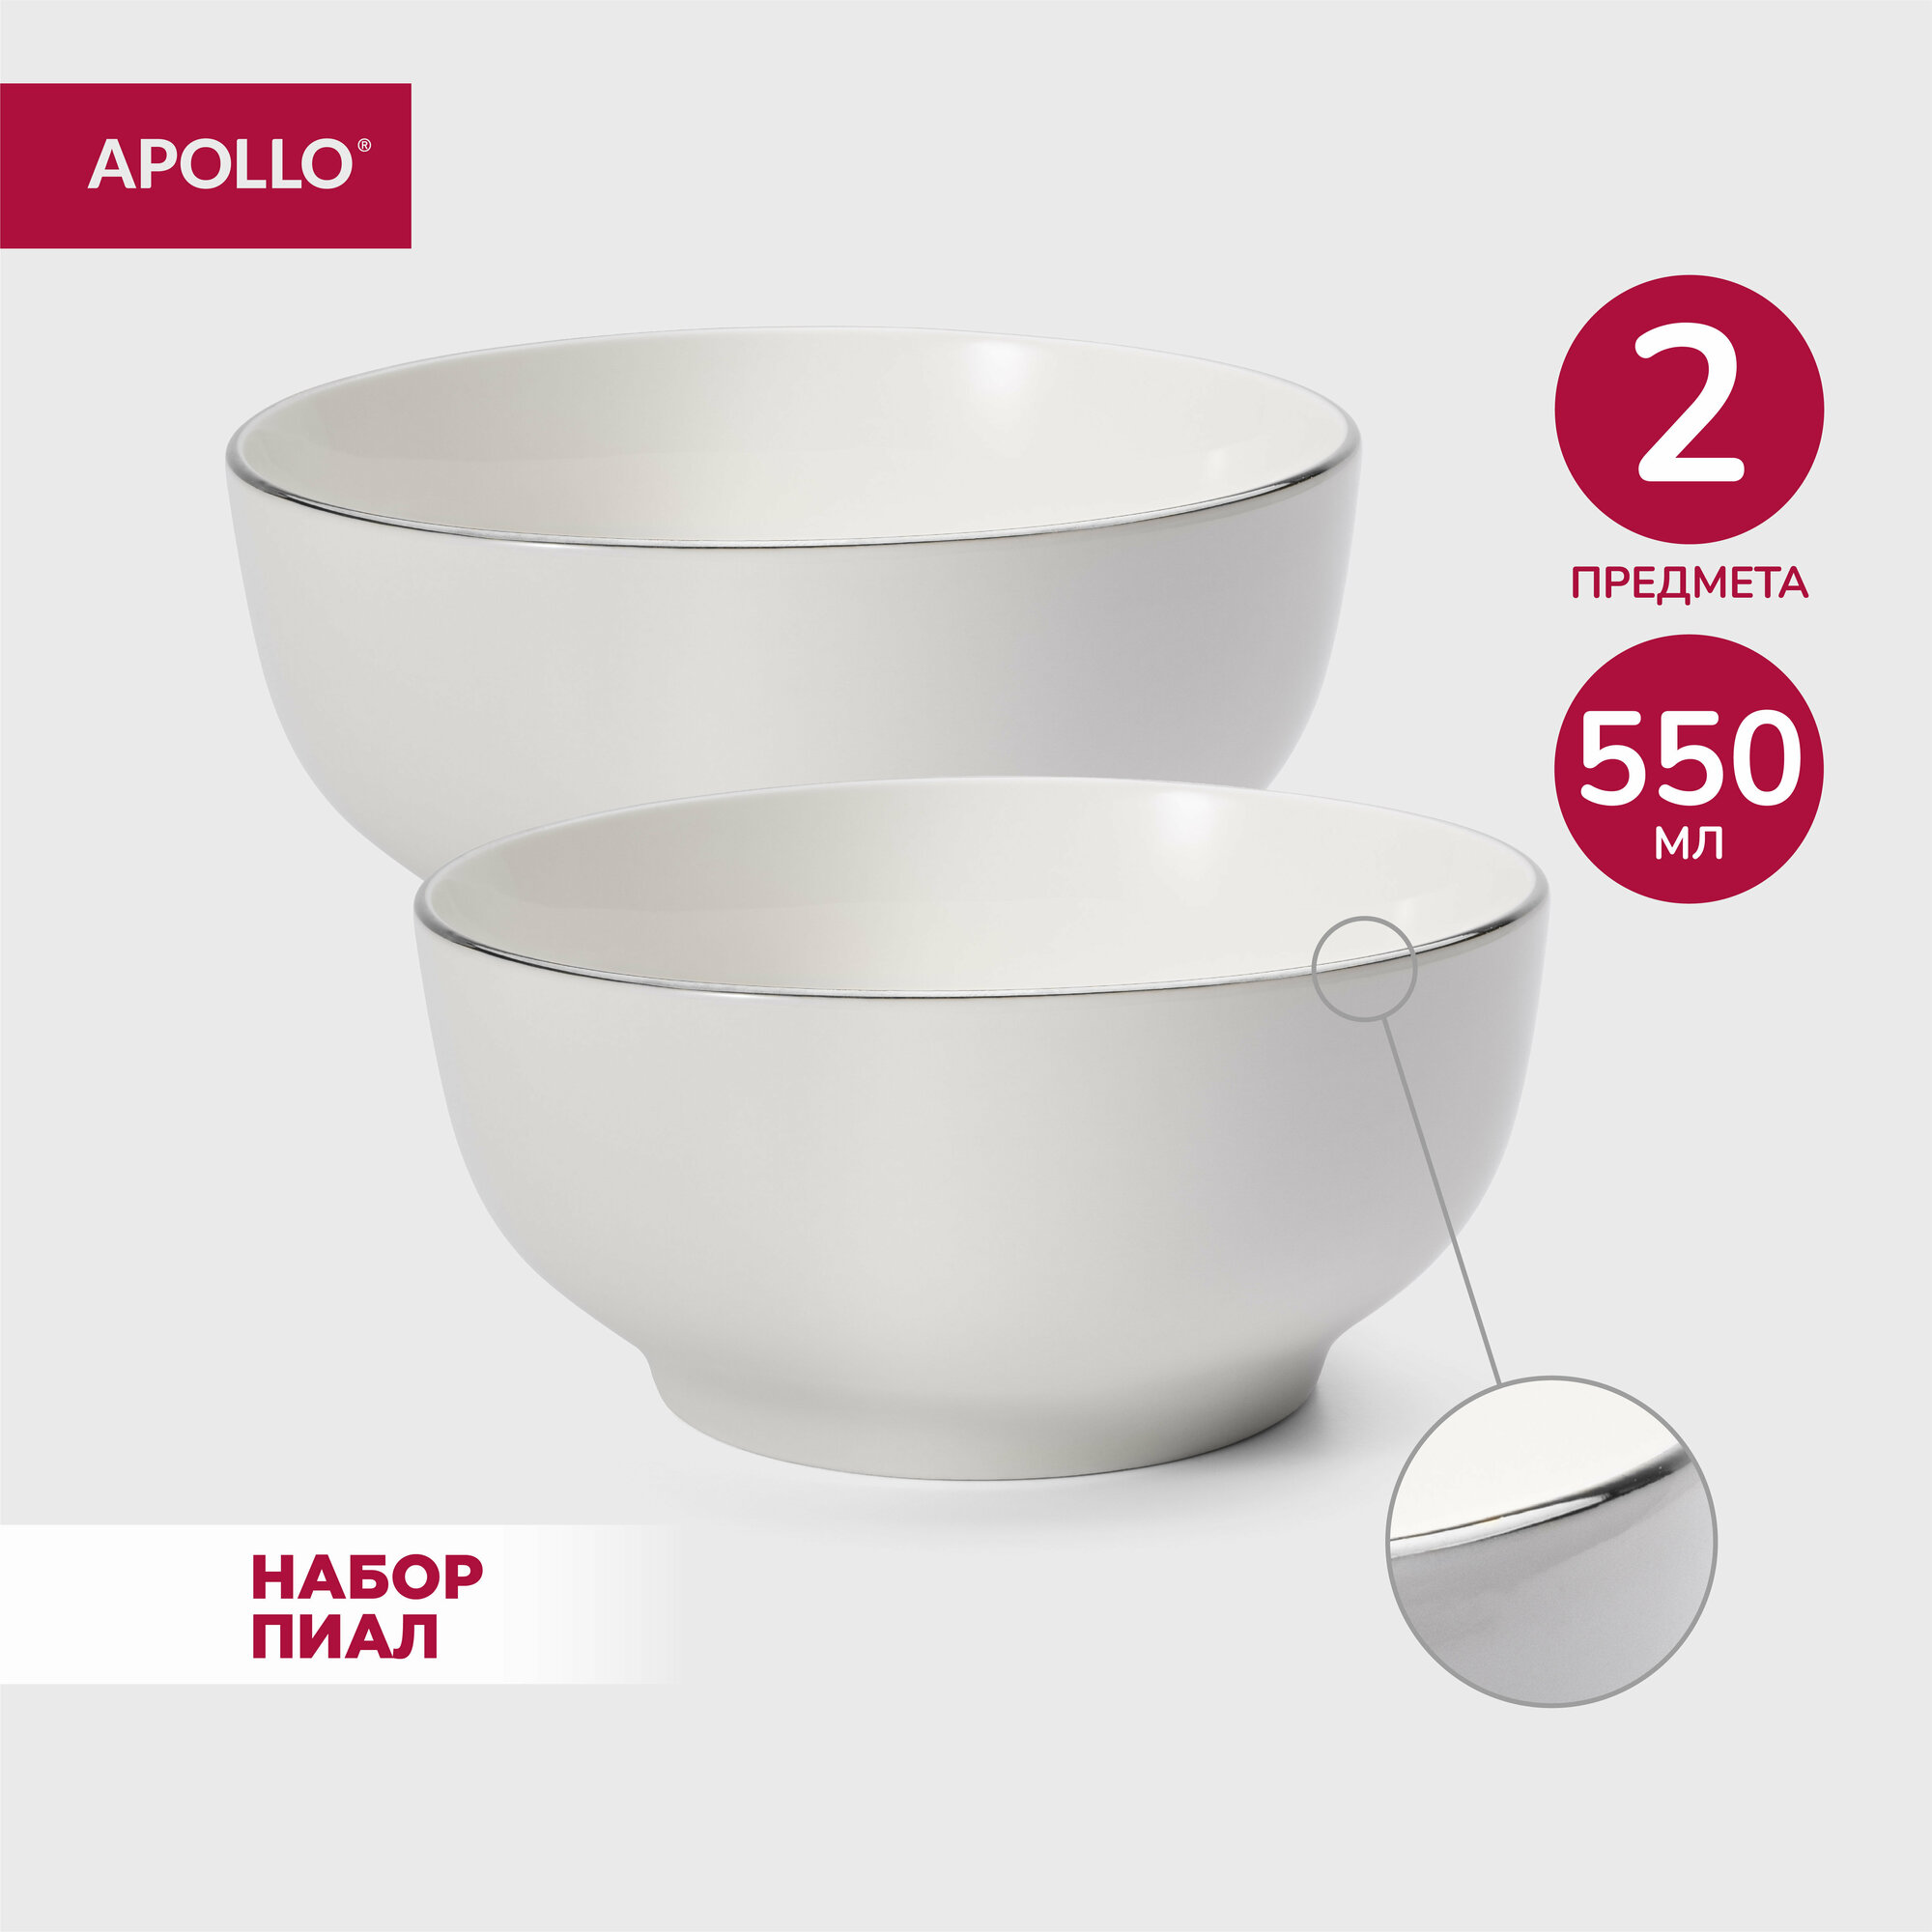 Тарелка глубокая суповая из фарфора набор обеденных тарелок салатник для сервировки фарфоровая посуда Apollo "Cintargo" 175 см 1100 мл 2 пр